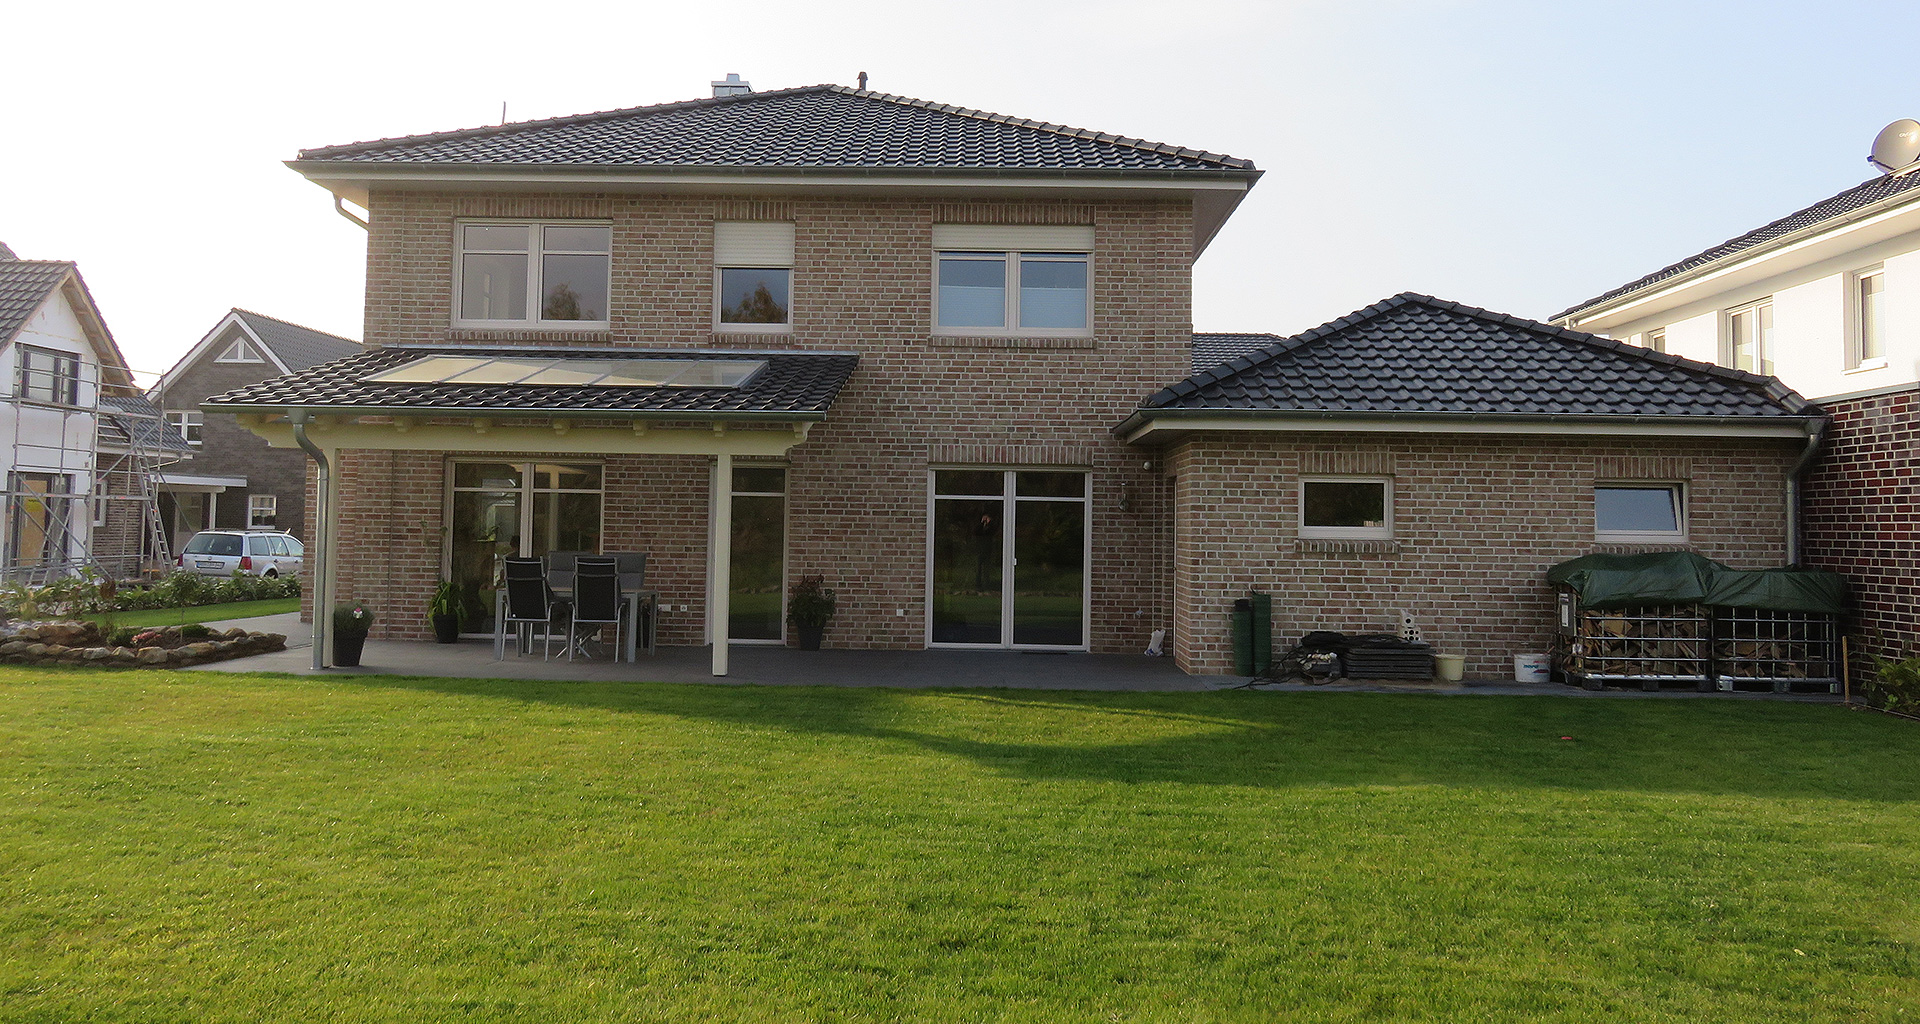 Einfamilienhaus Rückseite mit Terrasse und Garten in Wietmarschen-Lohne Emsland 2015